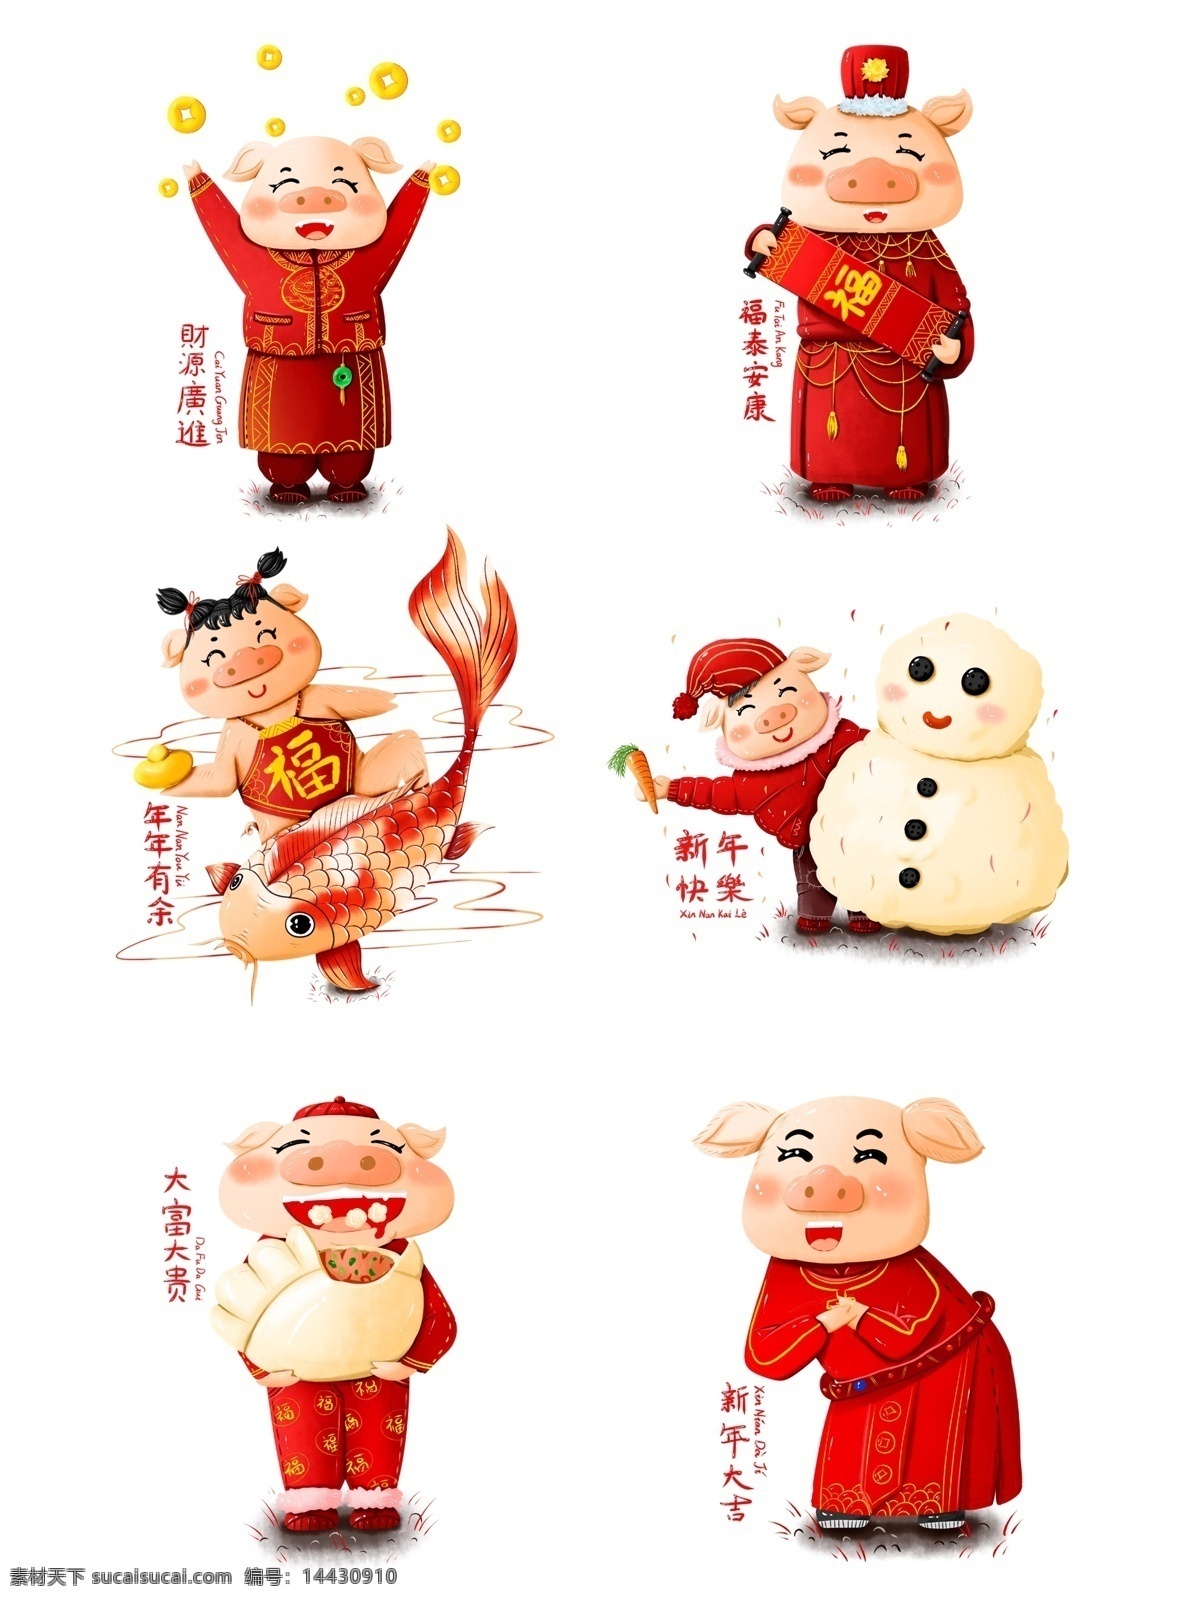 原创 手绘 新年 2019 猪 形象 节日 喜庆 元素 春节 商用 猪元素 猪形象 组合